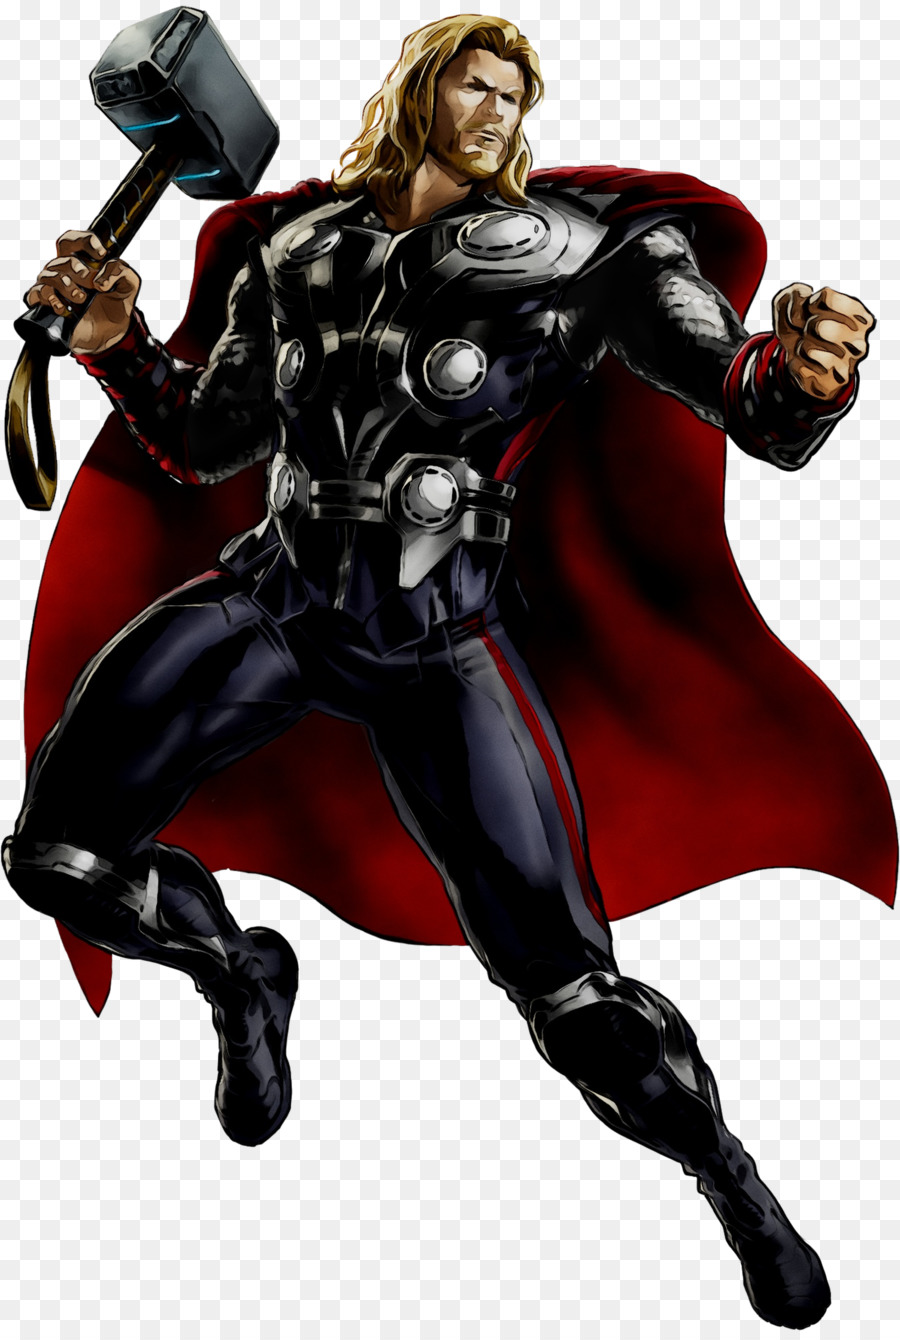 Thor Loki Marvel: Avengers Alliance Odin Hulk -  png download - 1503*2223 - Free Transparent Thor png Download.